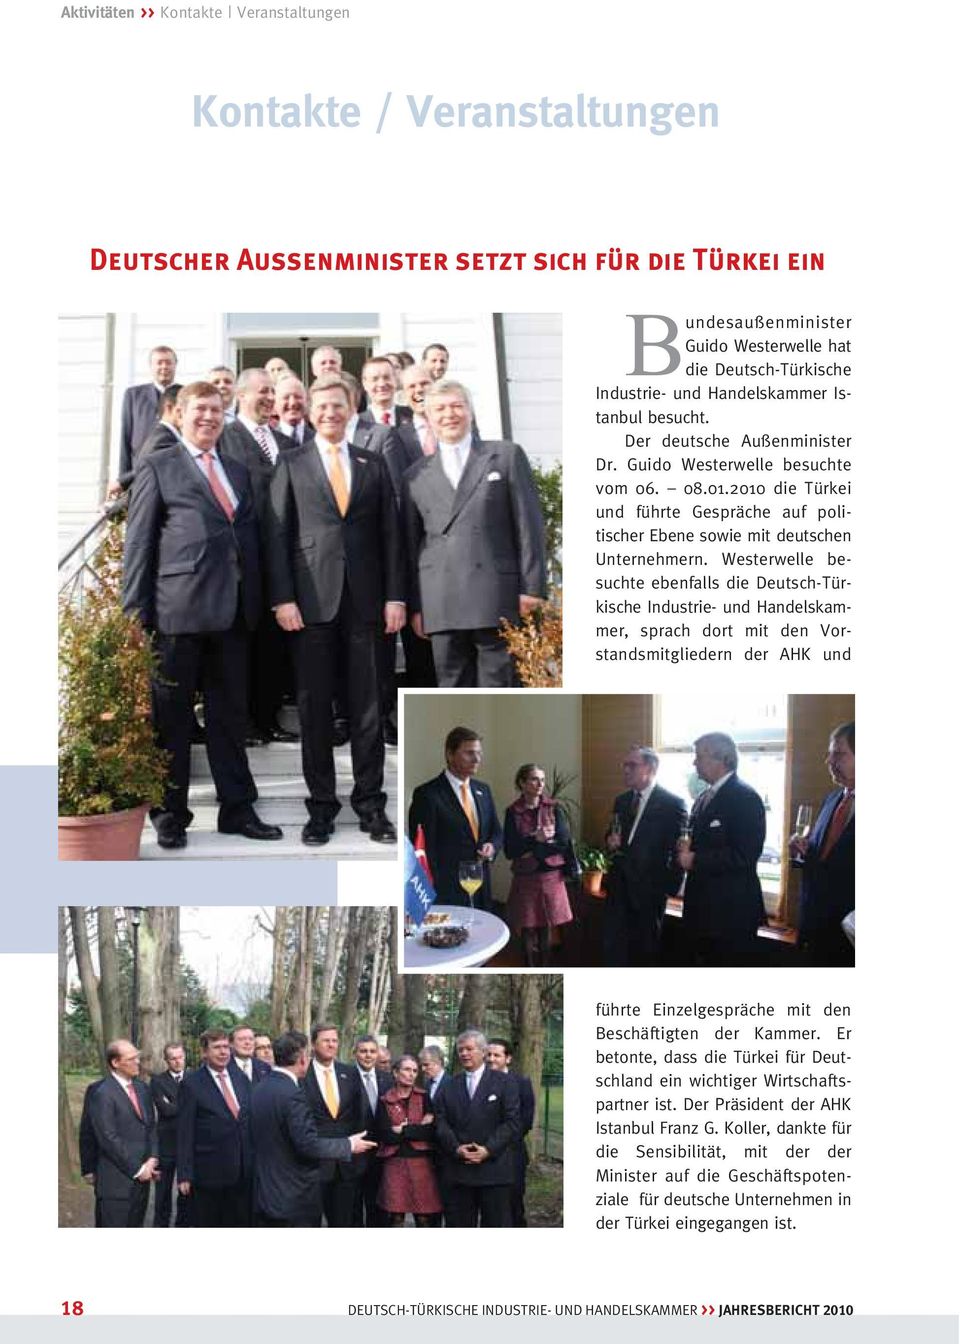 2010 die Türkei und führte Gespräche auf poli - tischer Ebene sowie mit deutschen Unter nehmern.